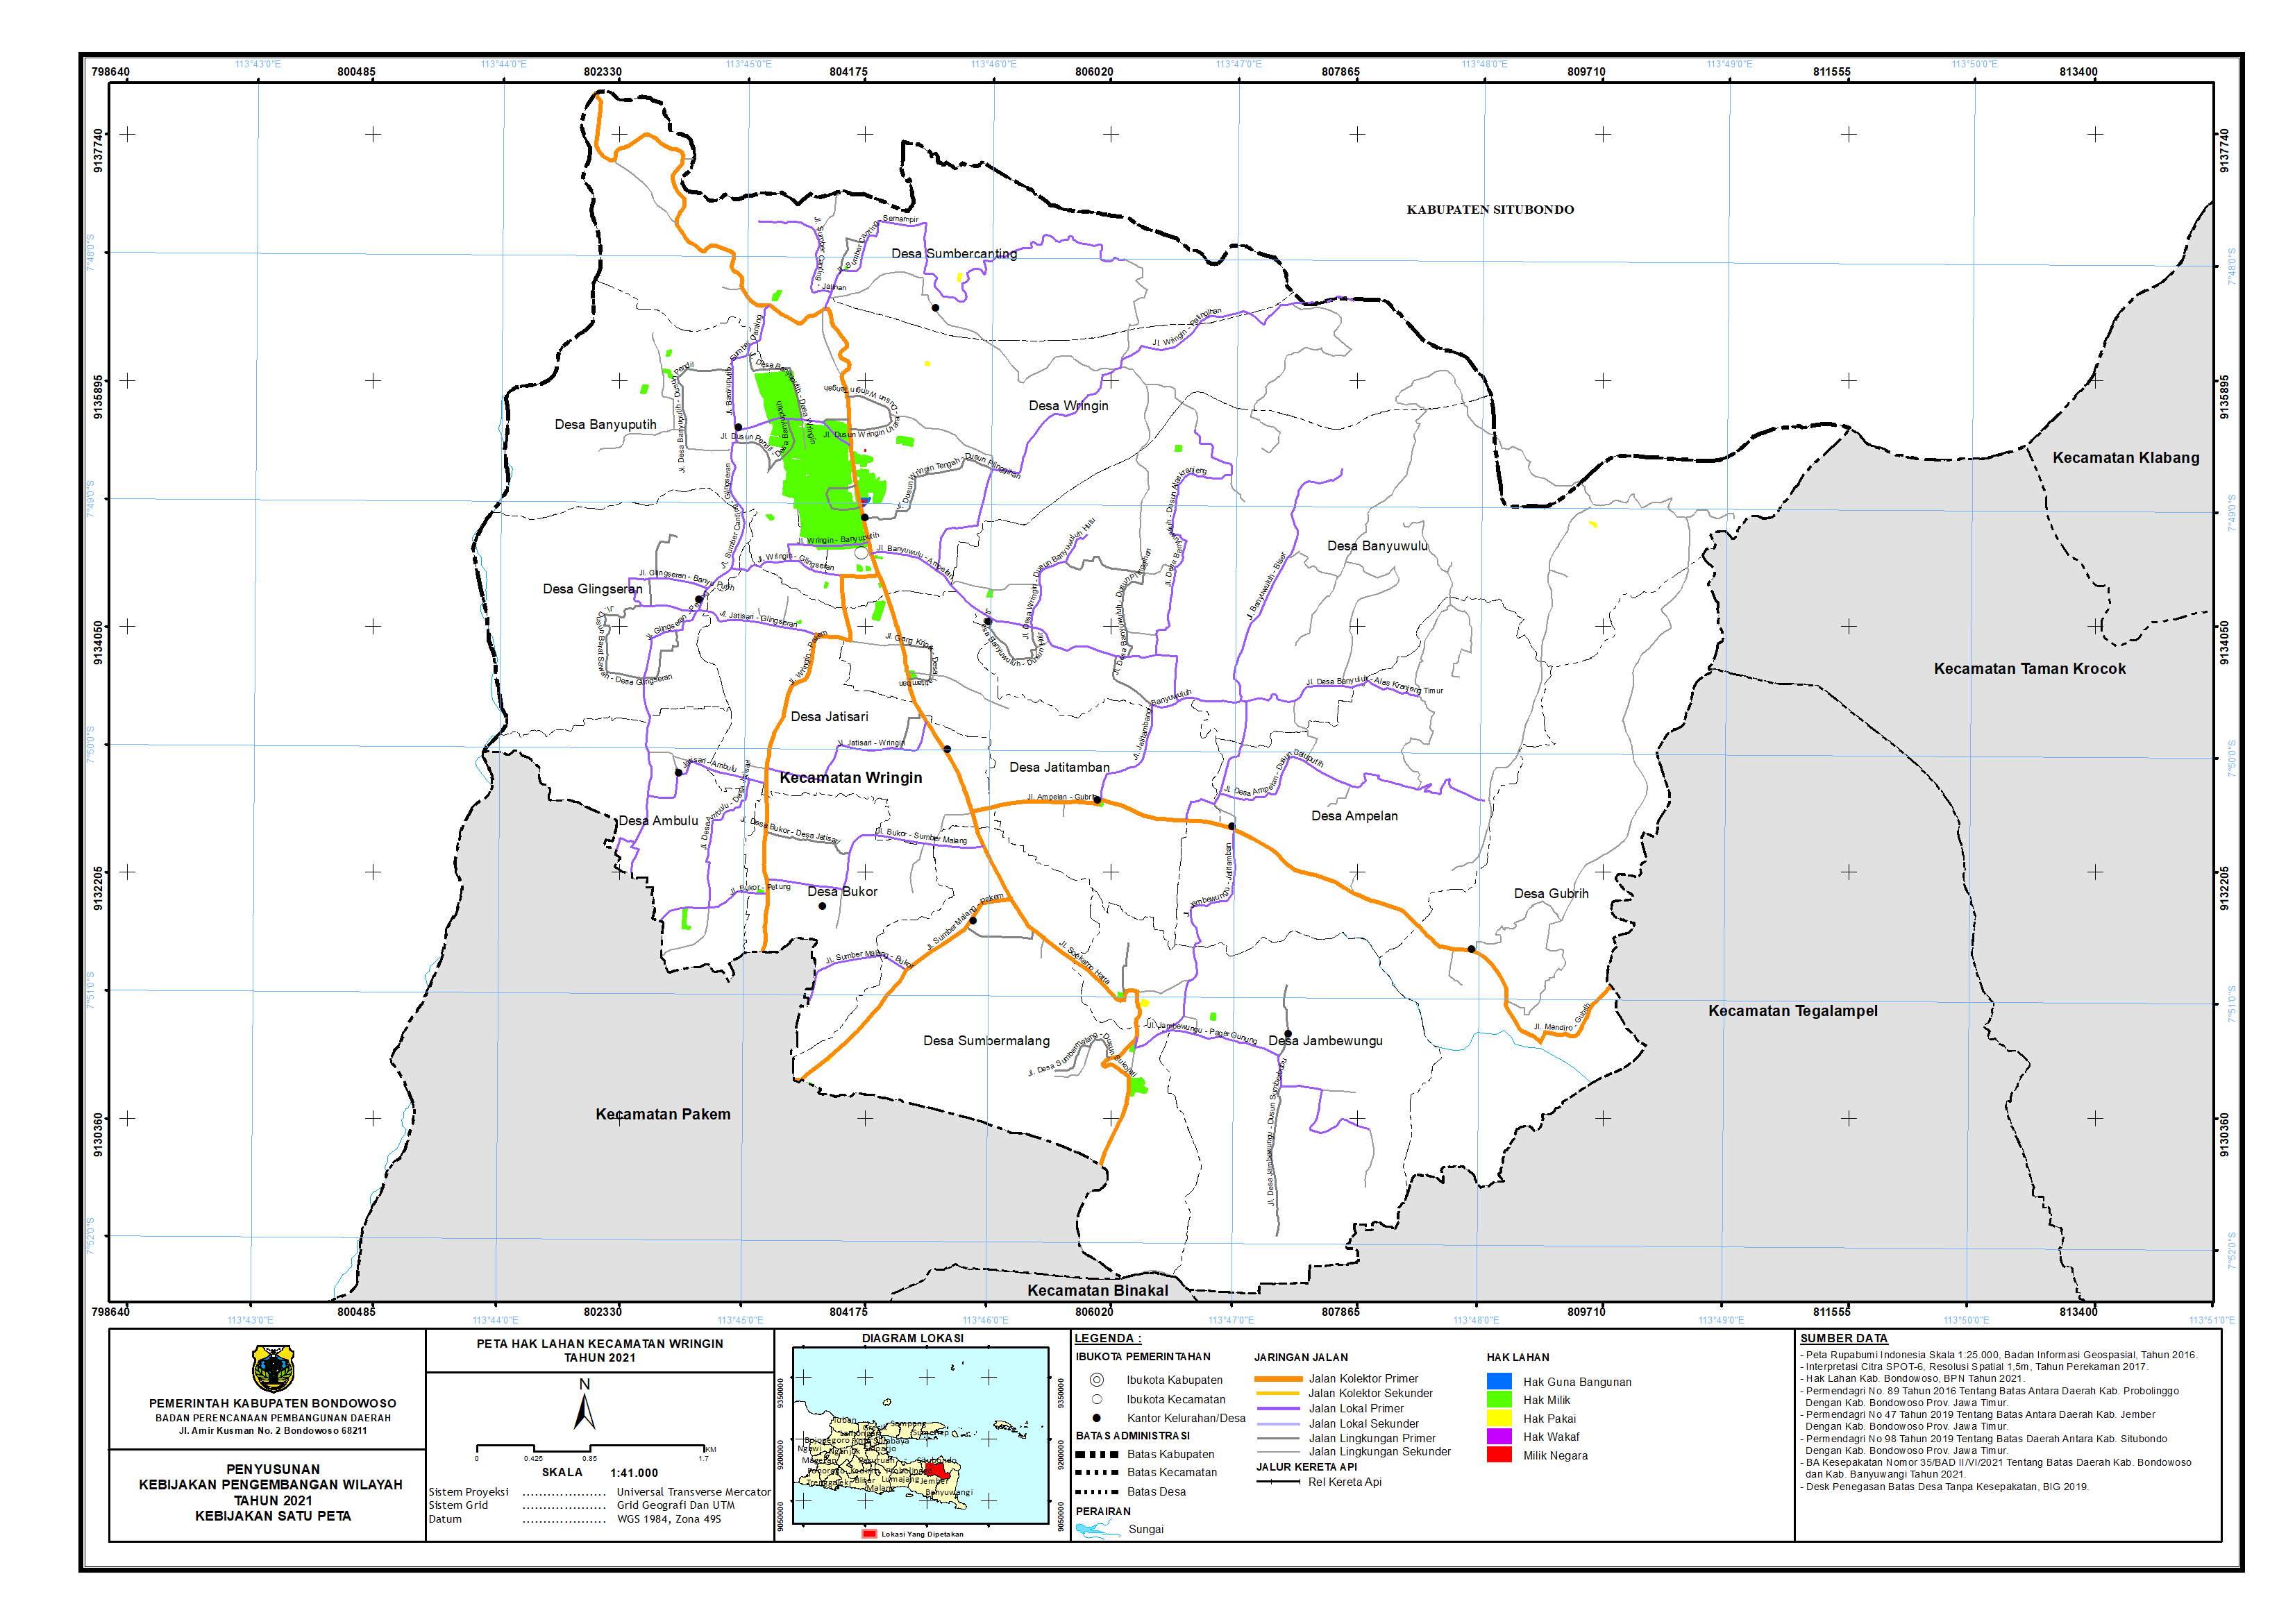 Peta Hak Lahan Kecamatan Wringin.png